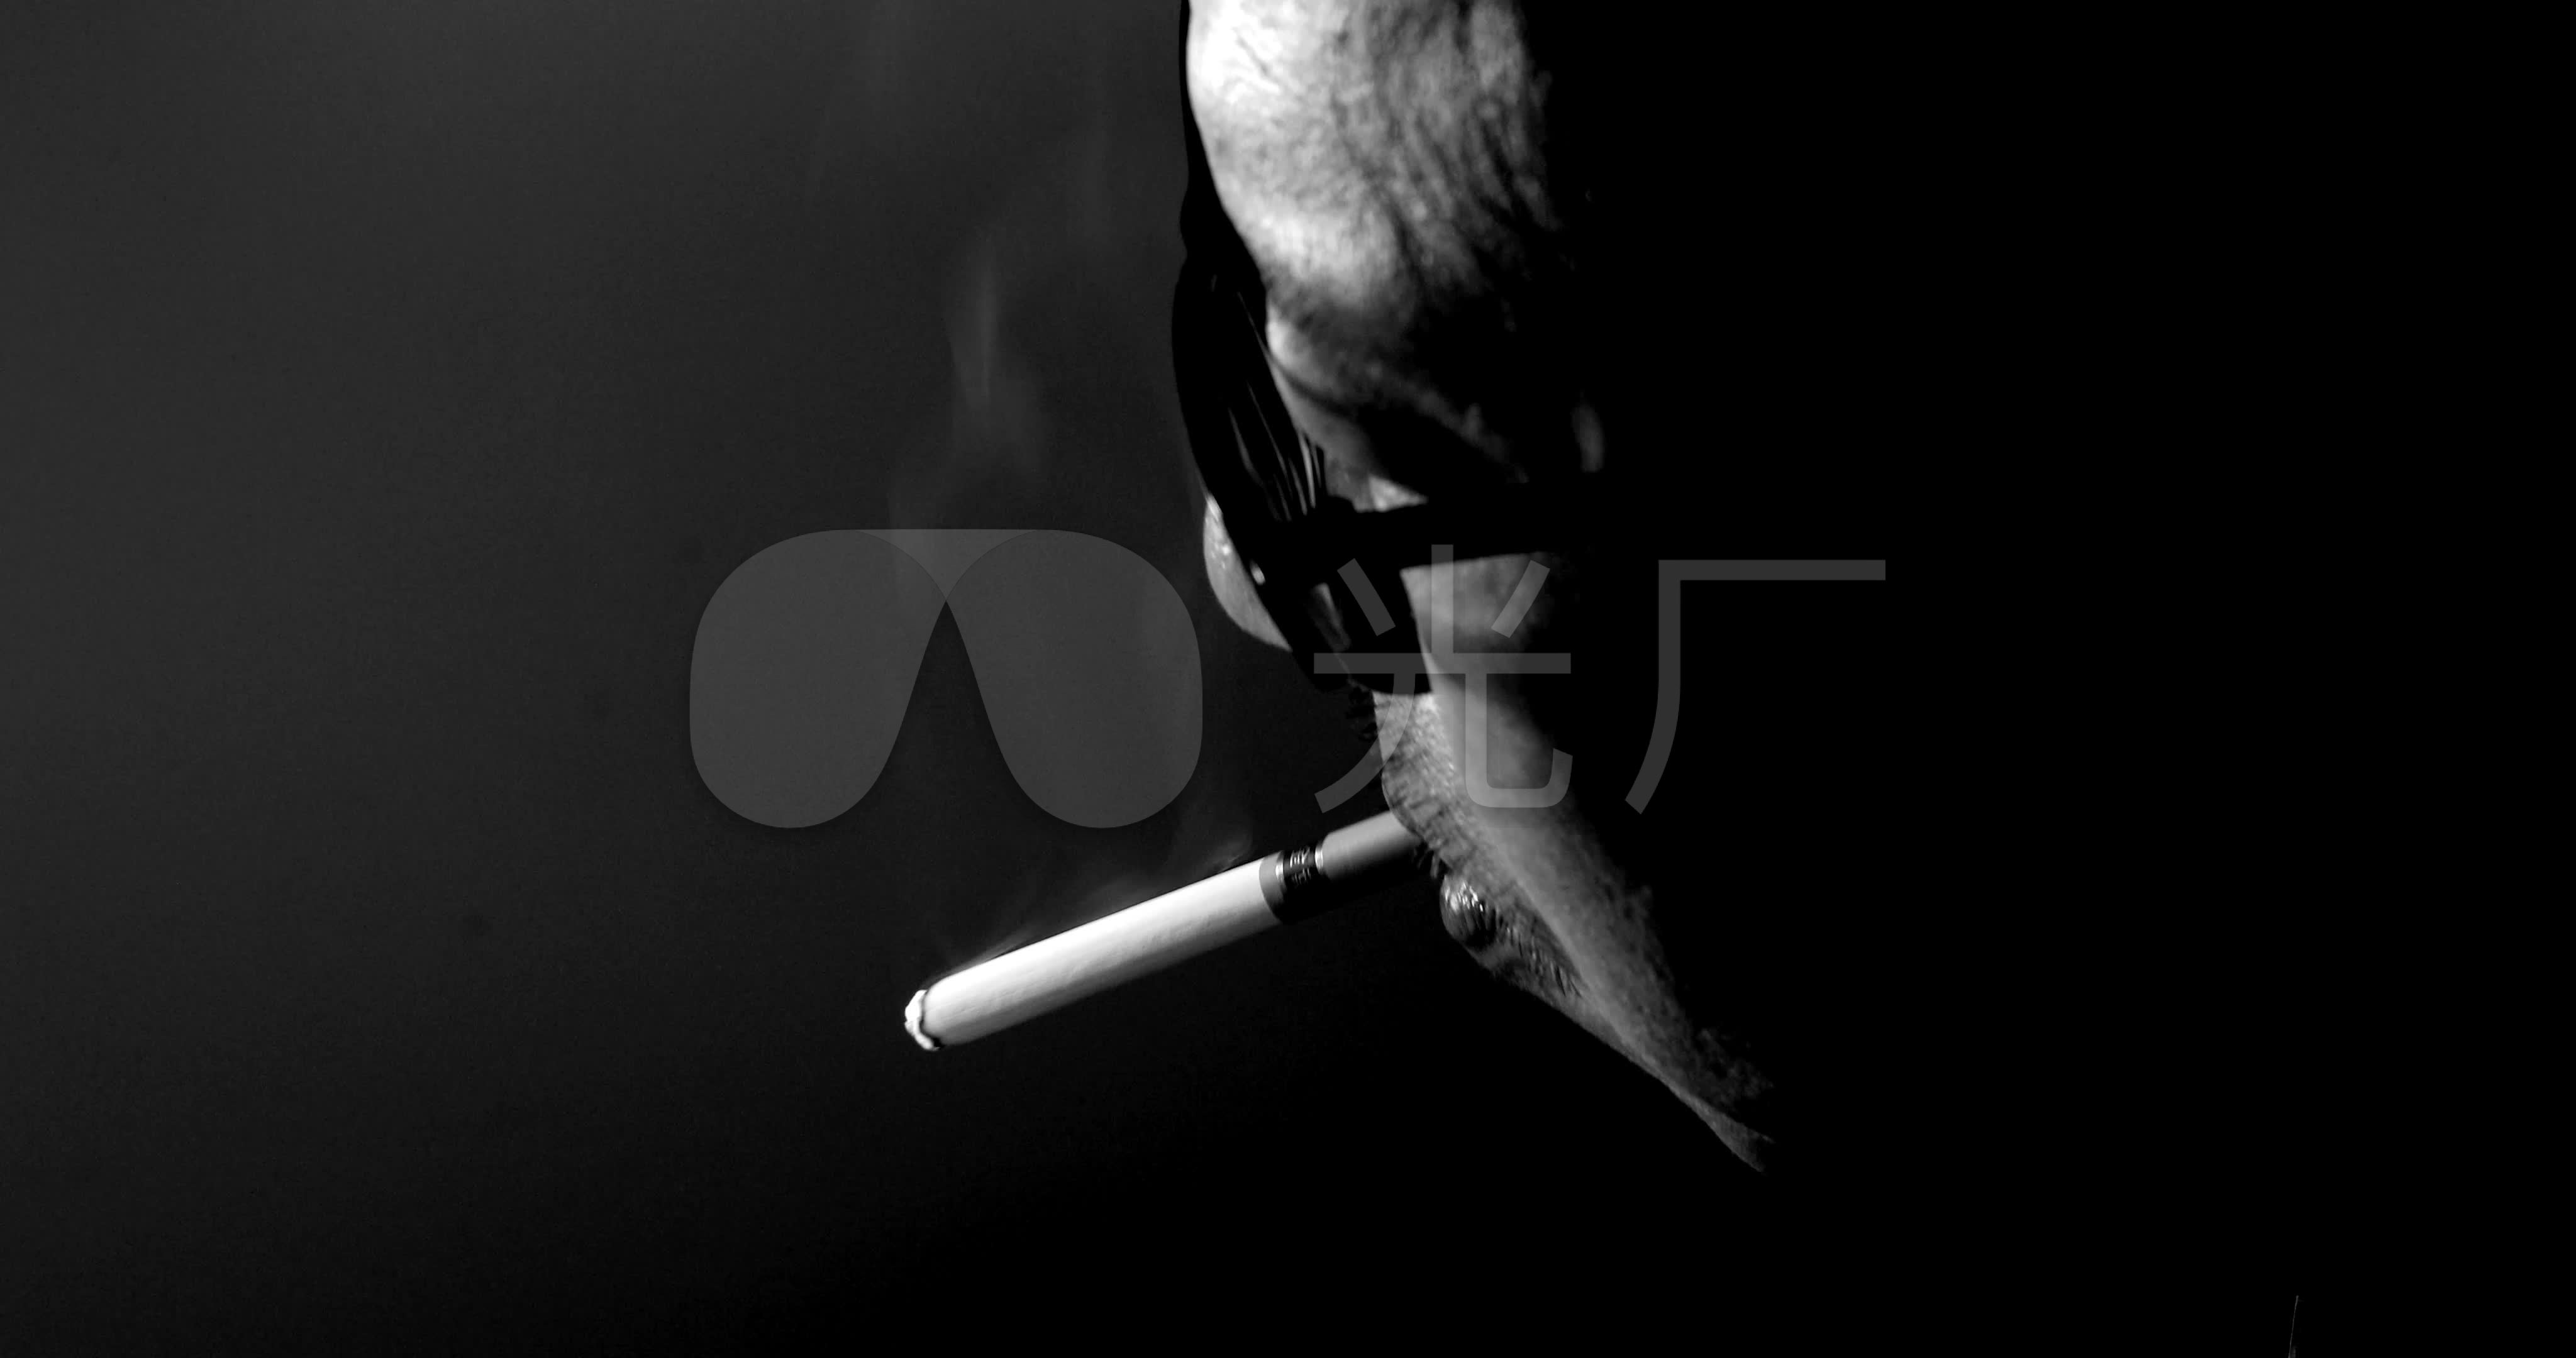 戴黑帽子的男人吸烟香烟 · 免费素材图片